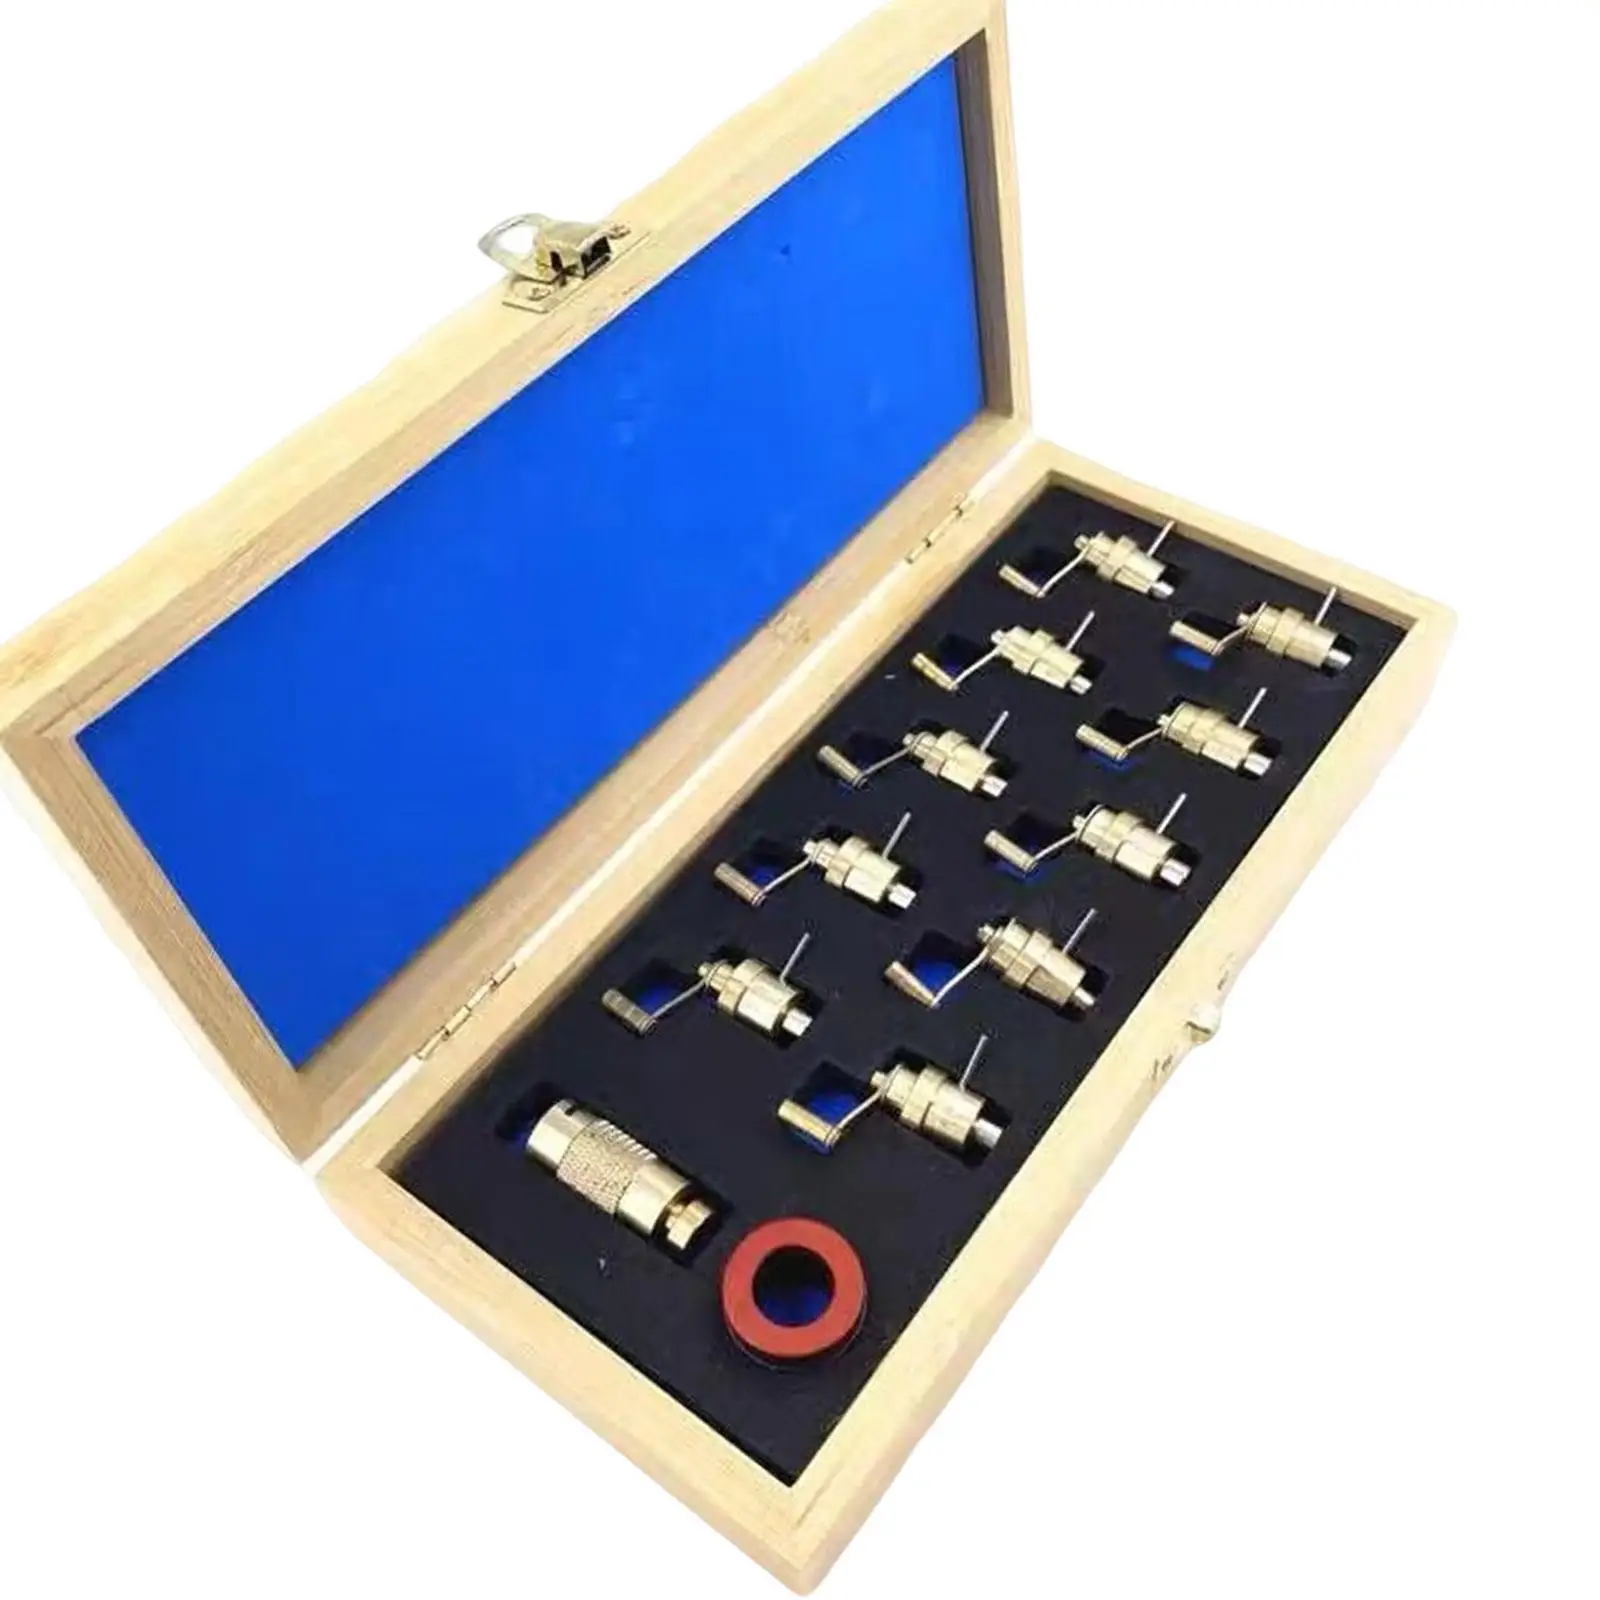 Mainspring Winder Set Movement Repair Tool Wristwatch Repairing Accessories Brass Watch Movement 2235 8500-2 7750 8500-1